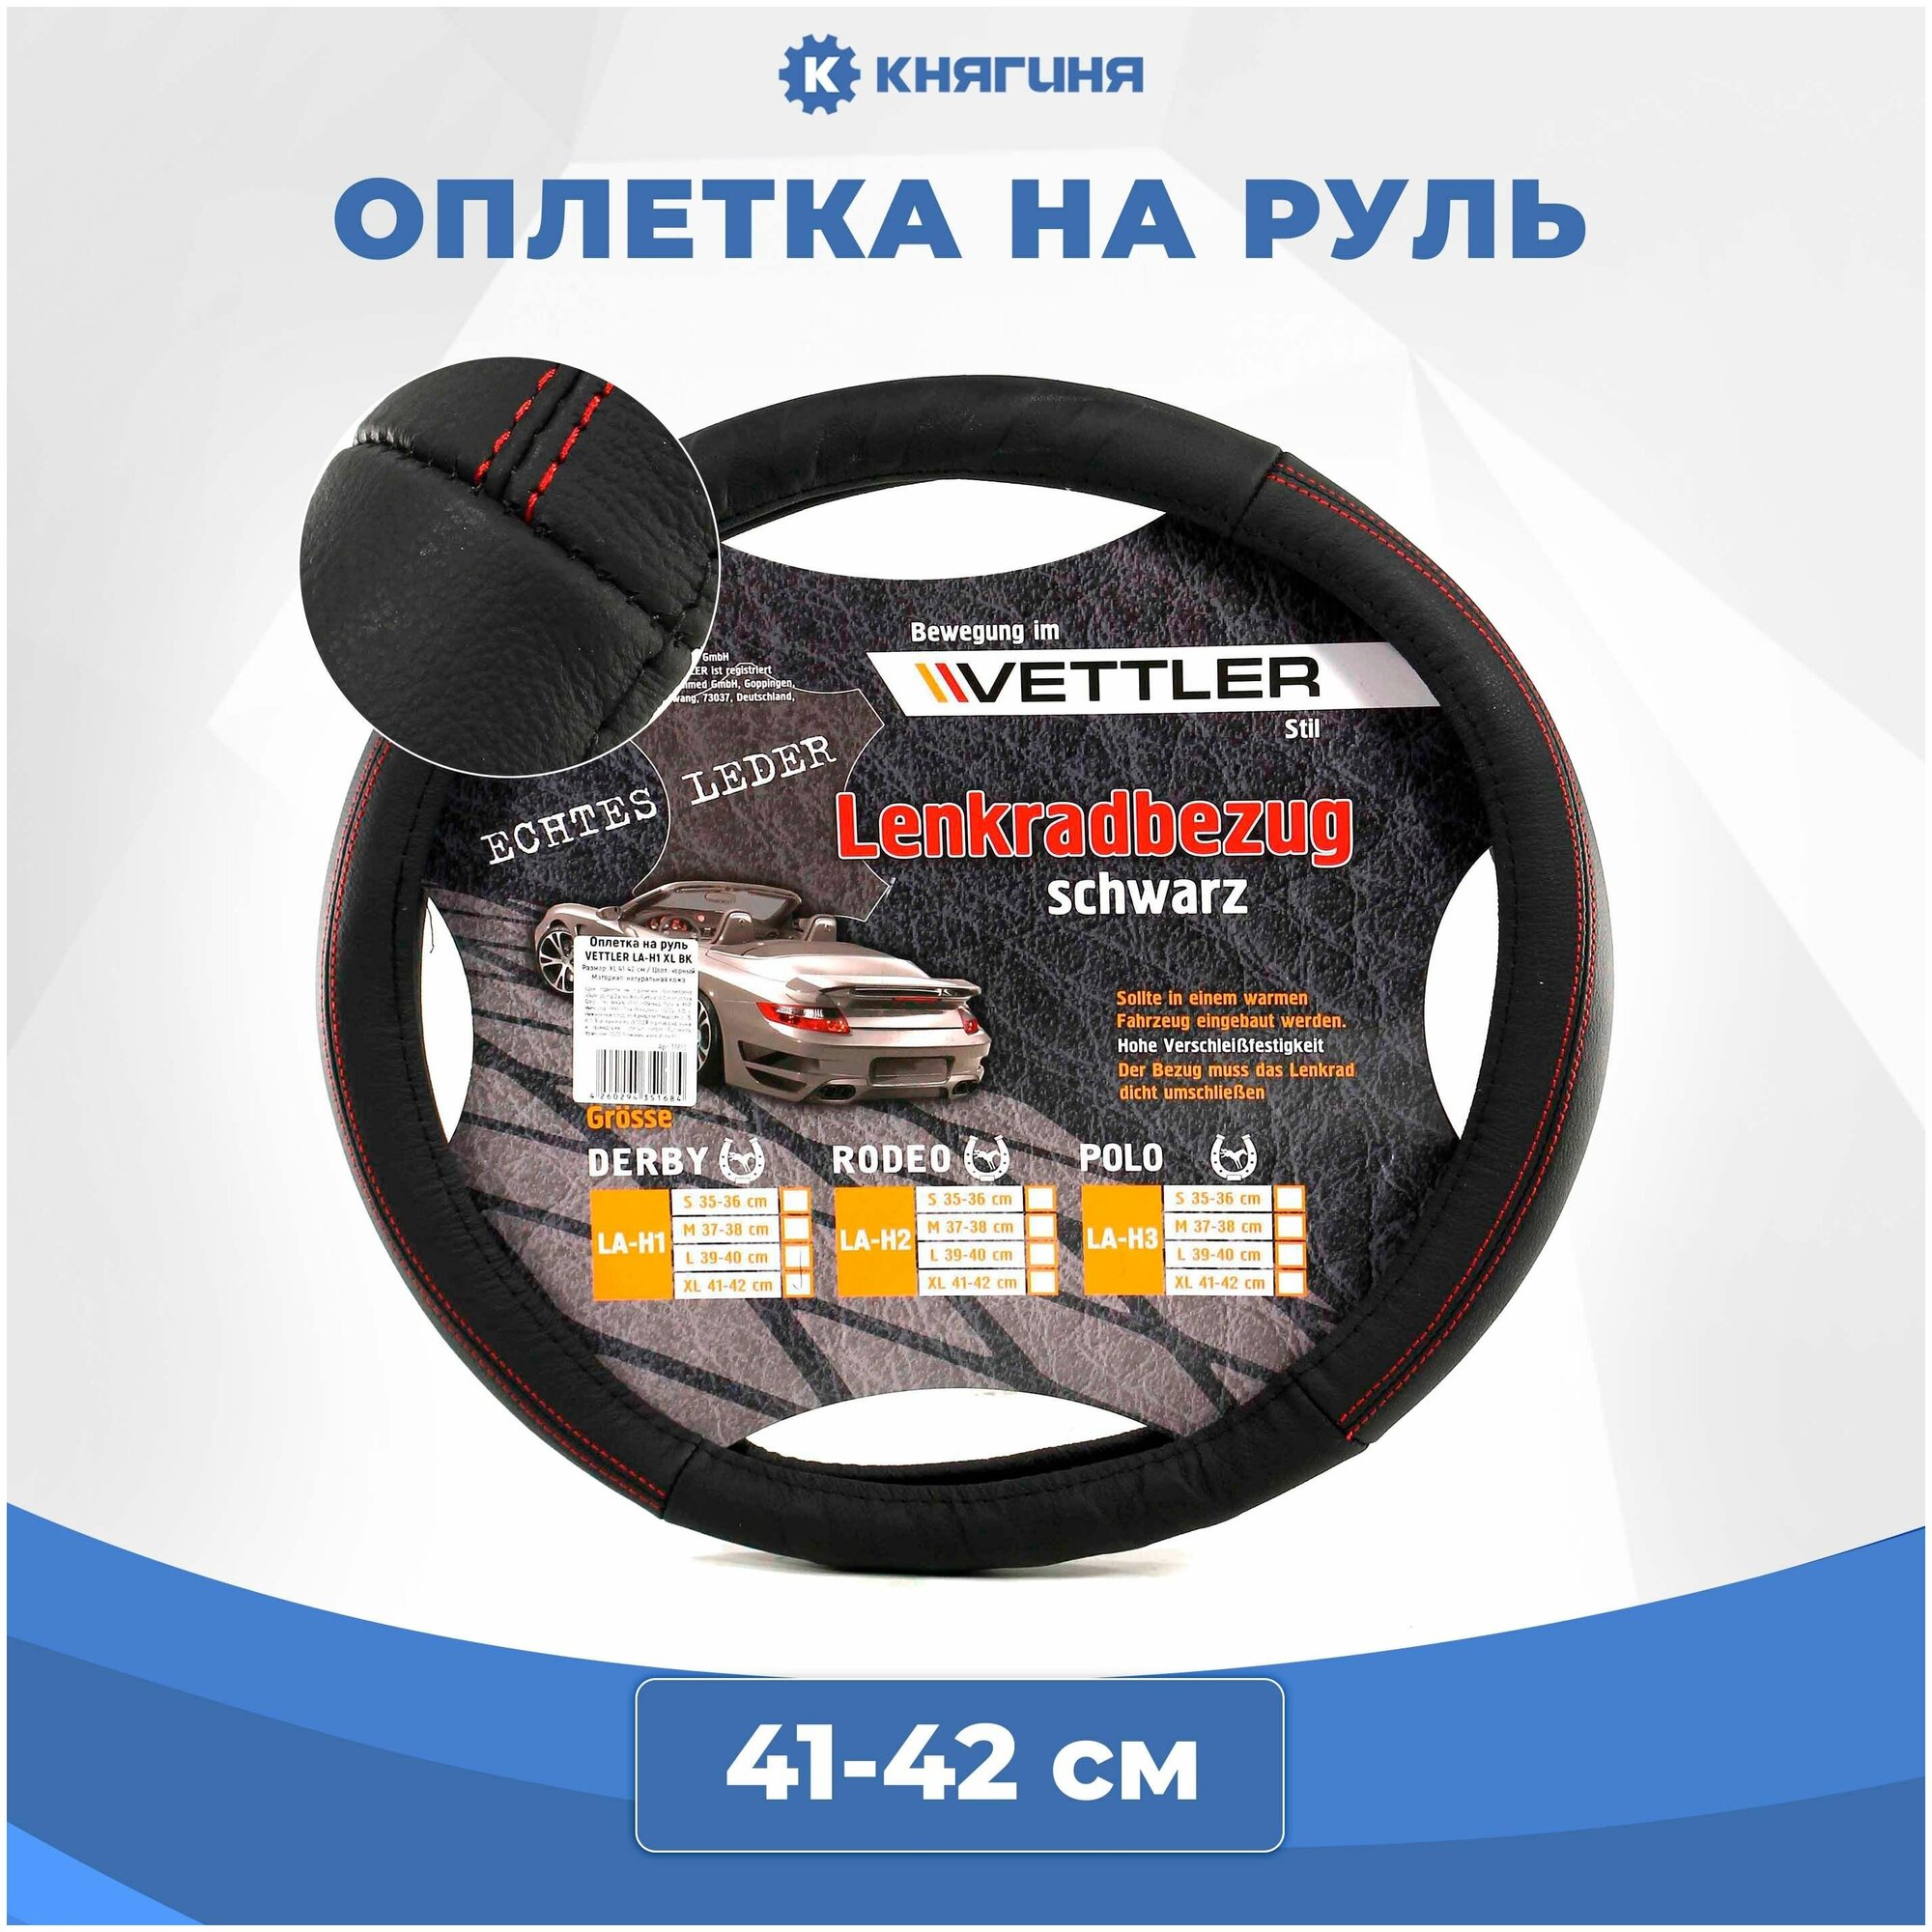 Оплетка на руль VETTLER XL 41-42 см натуральная кожа, черная DERBY